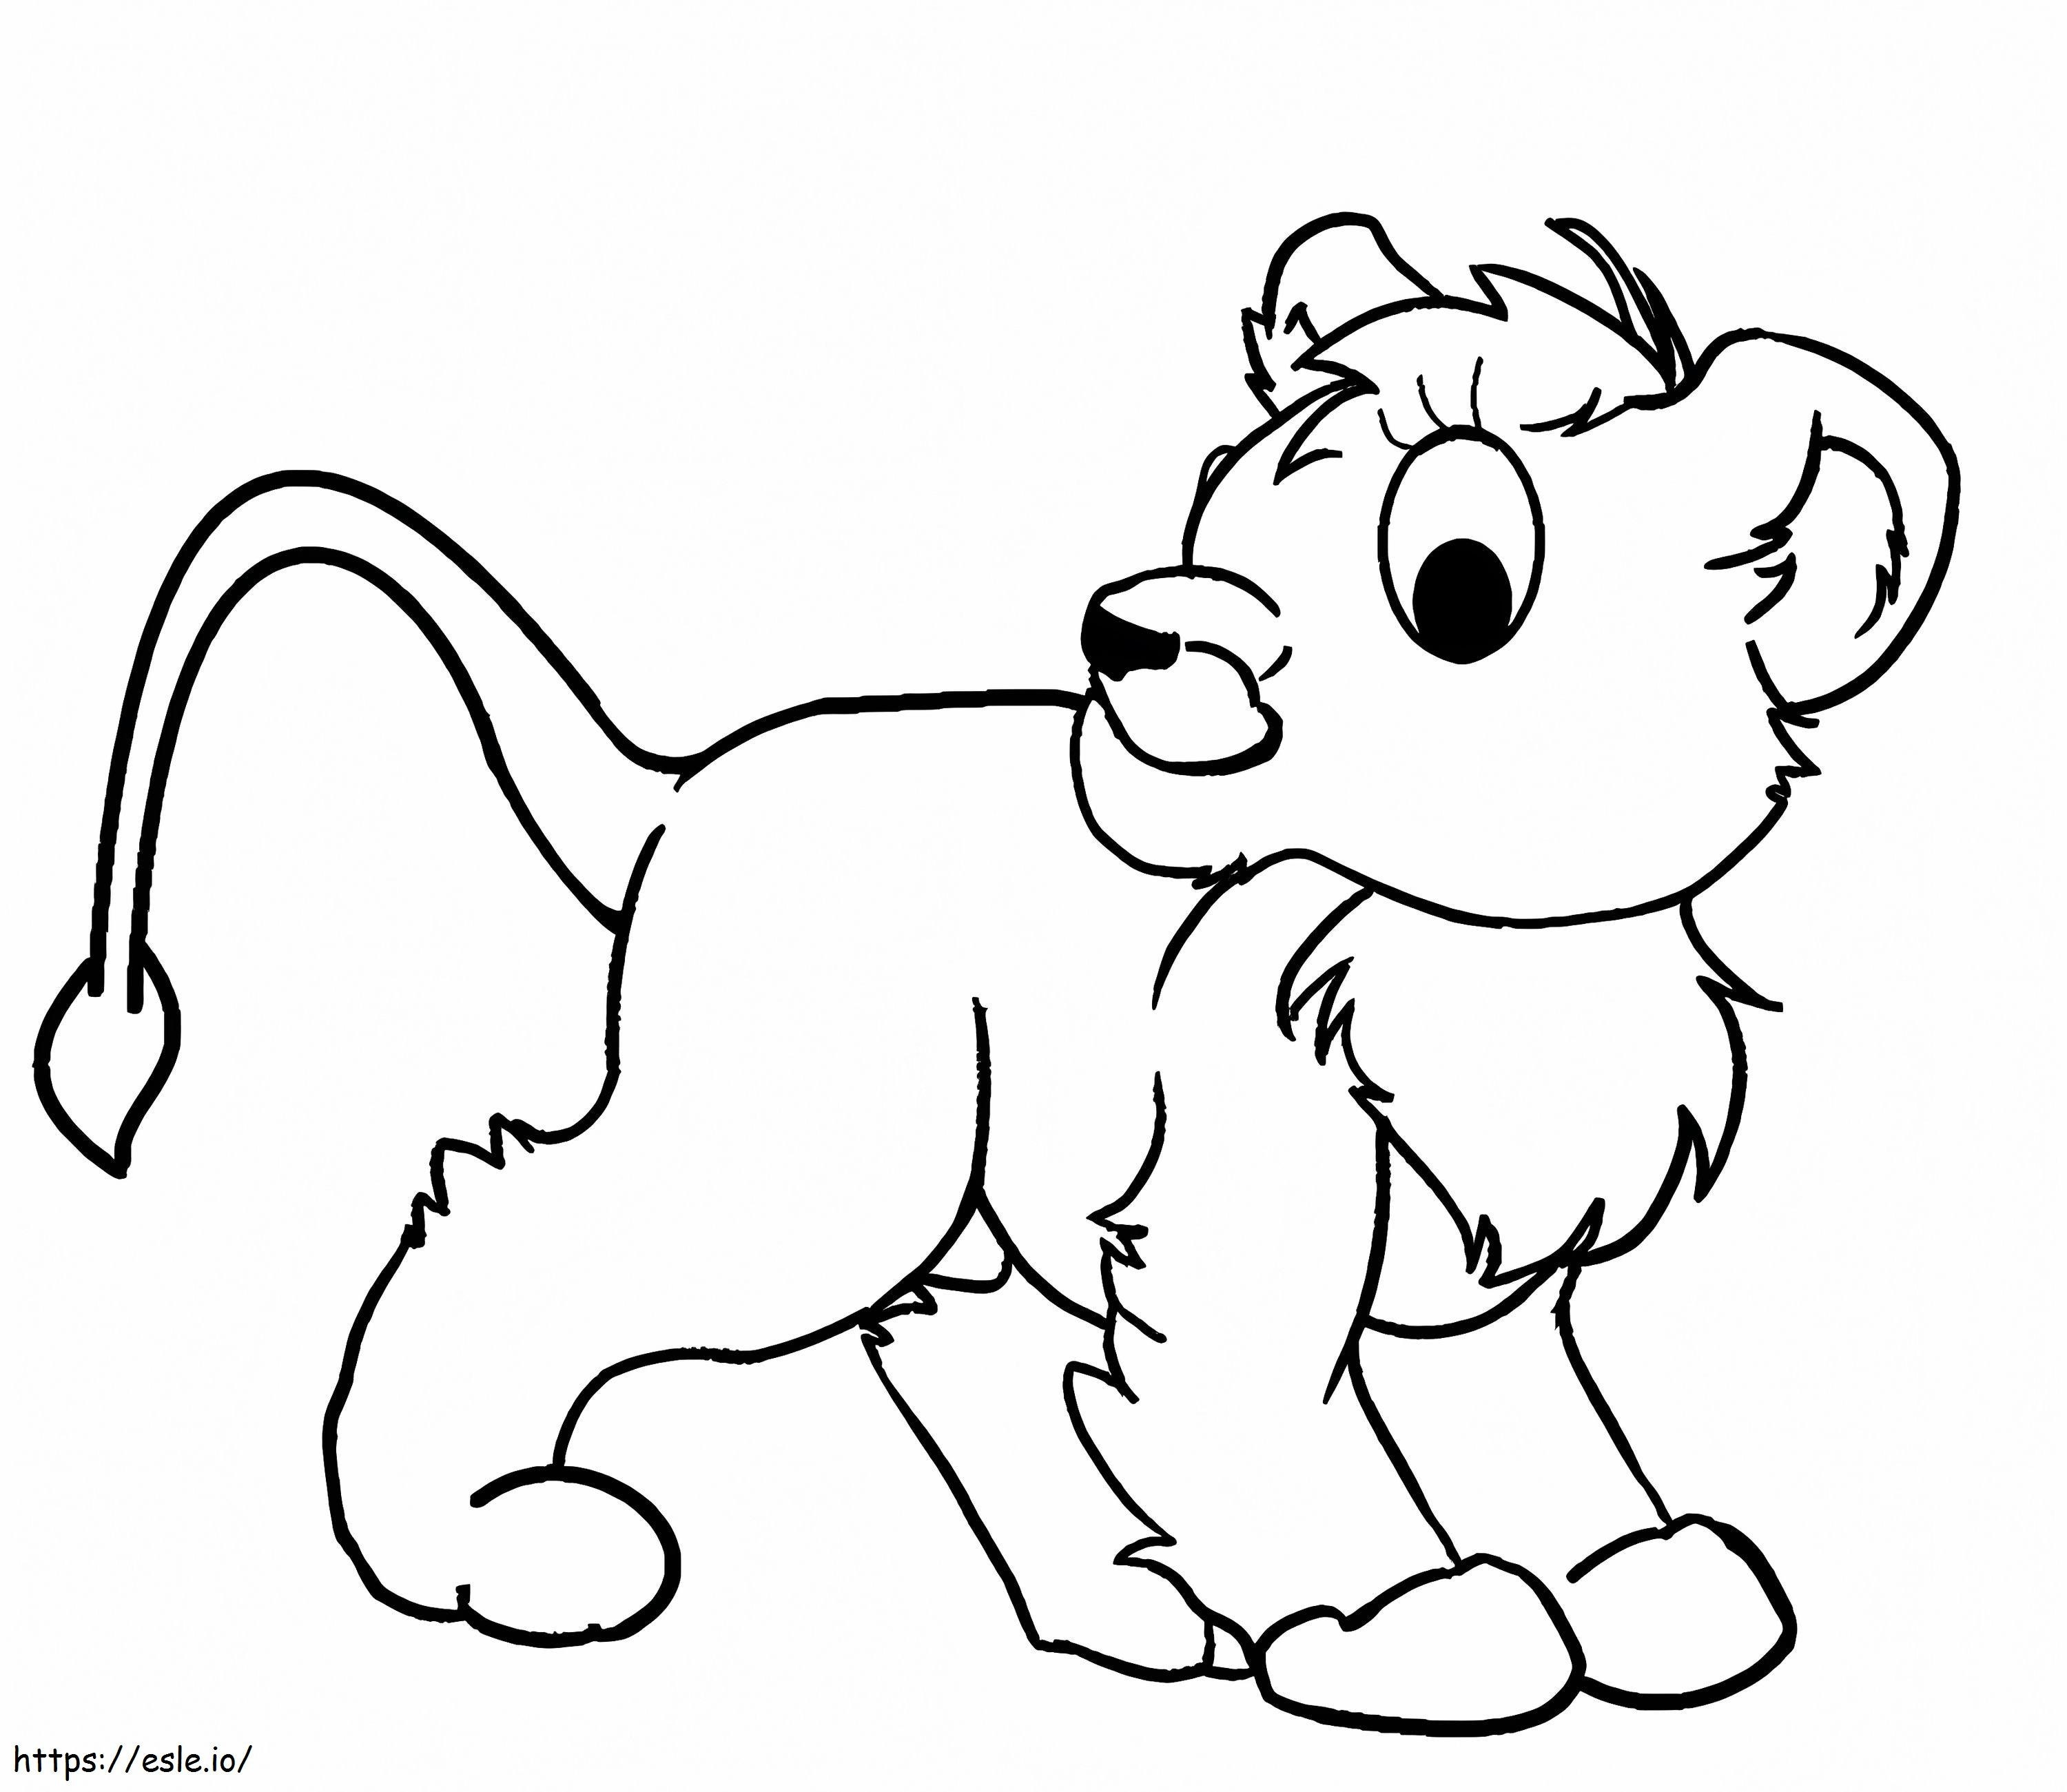 Coloriage Lion Webkinz à imprimer dessin